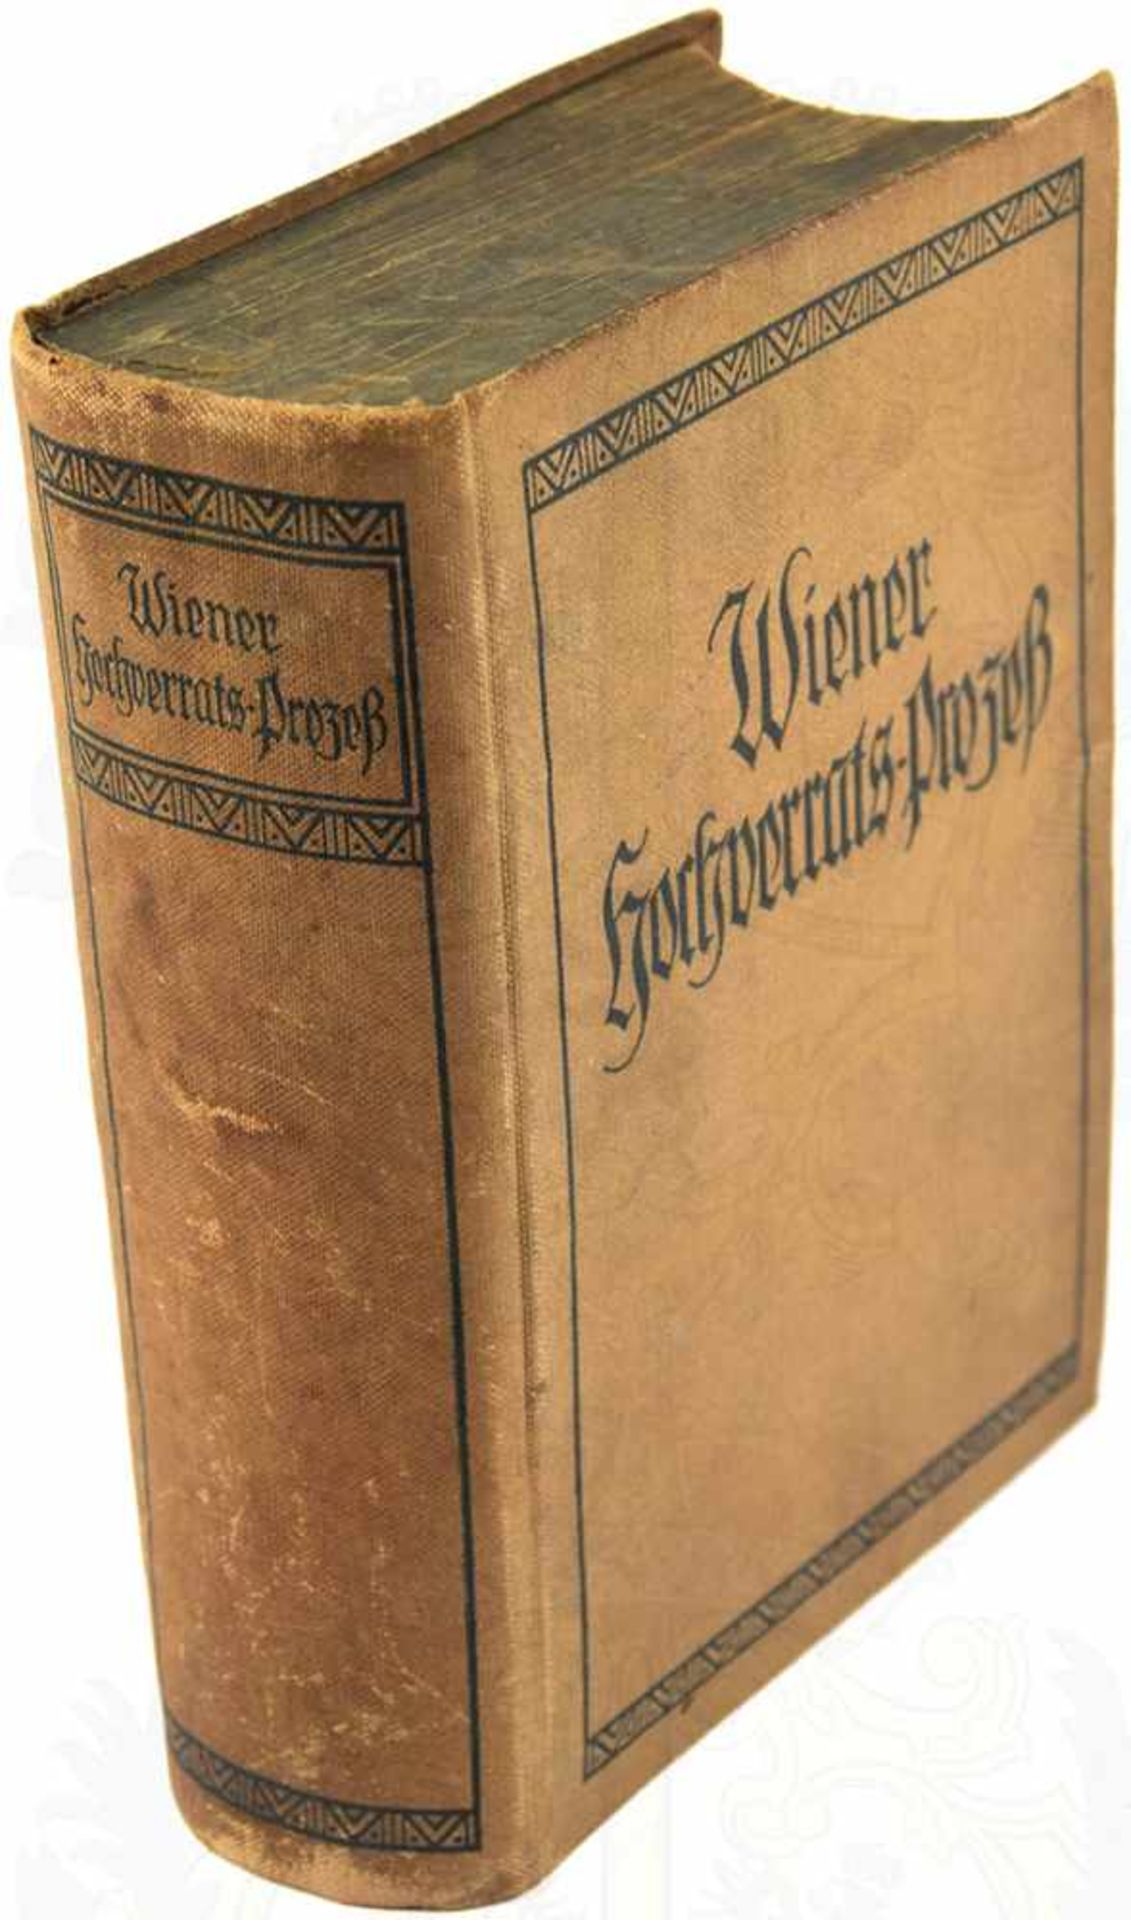 DER WIENER HOCHVERRATSPROZEß, Hrsg. H. Scheu, Wien 1911, 868 S., 1 Portraitbild, gepr. GLn.